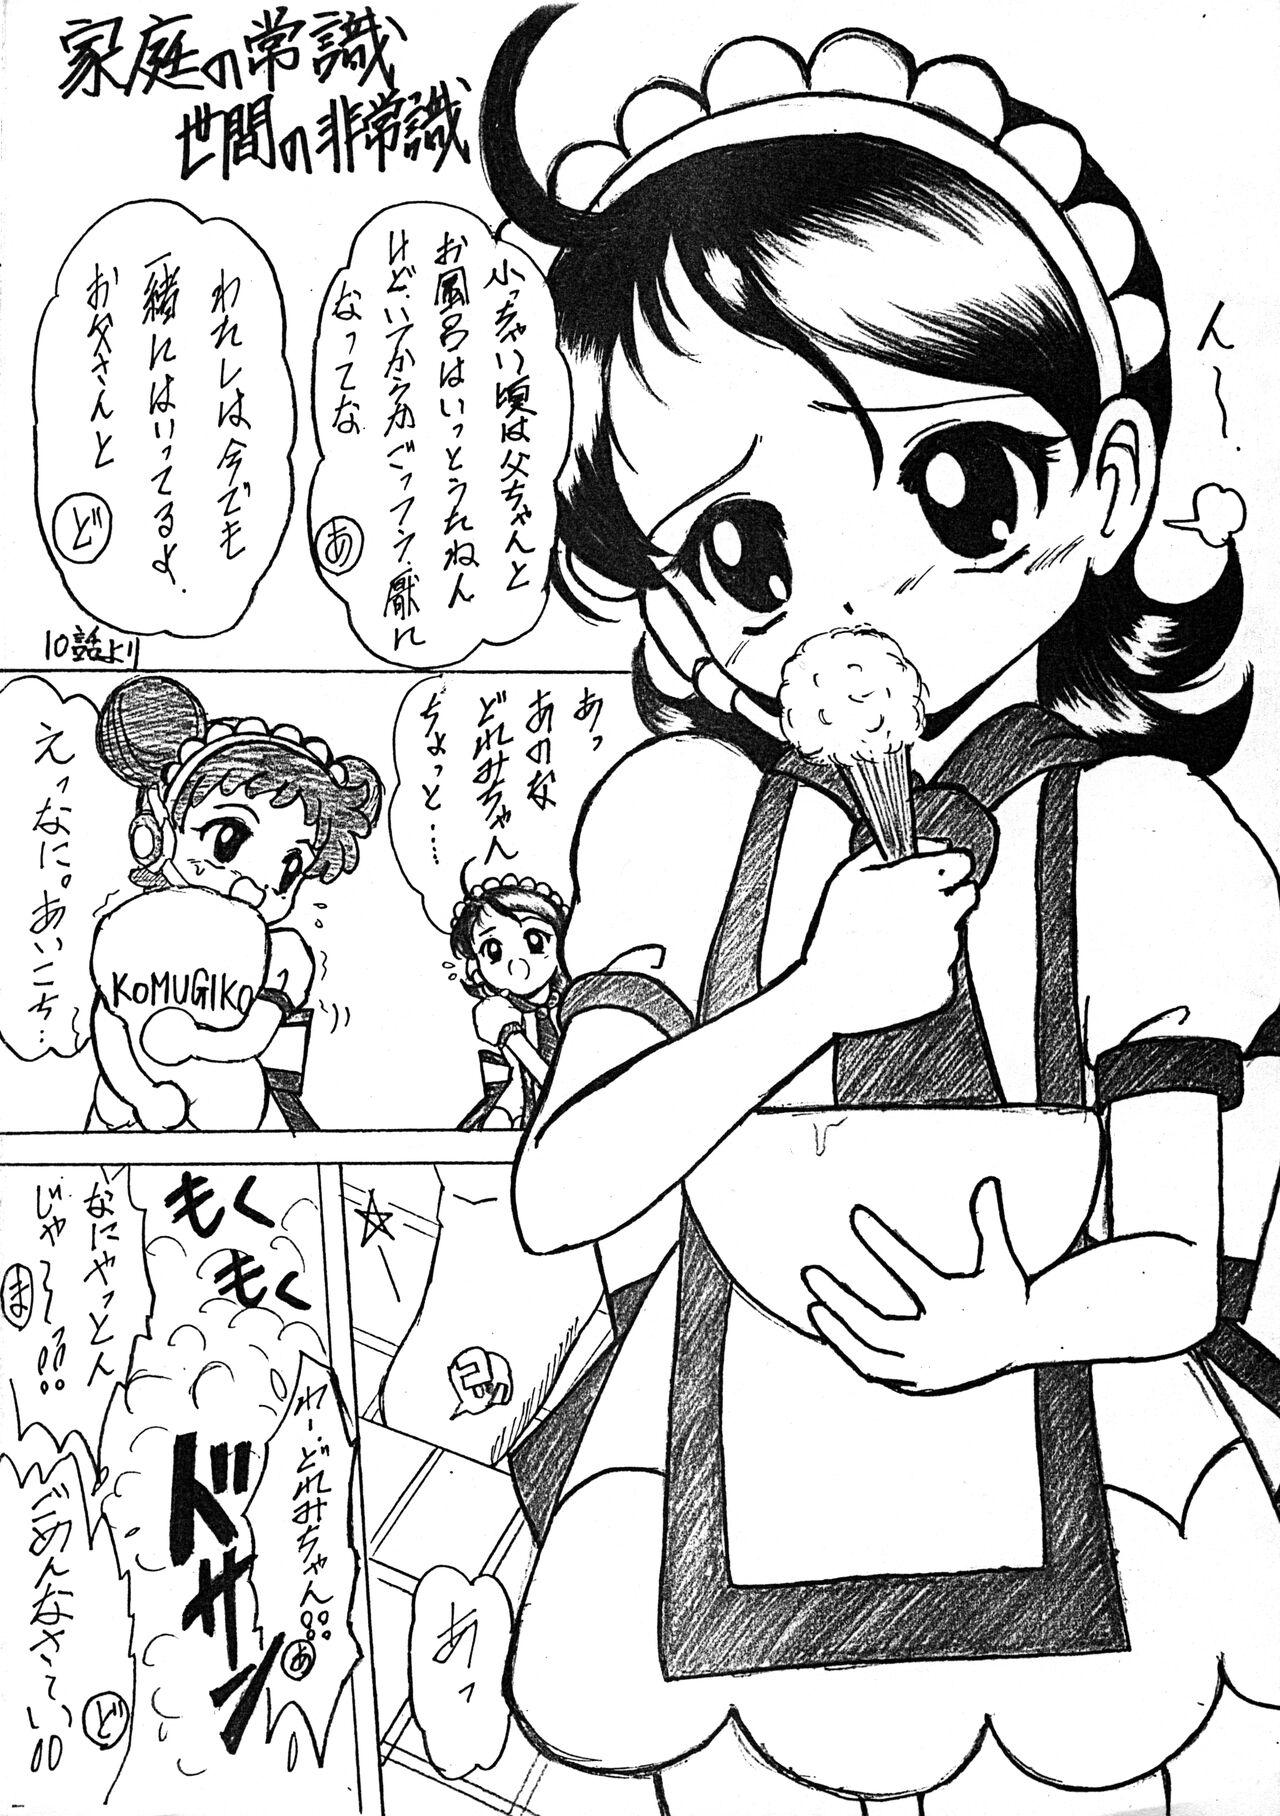 Riding Cock OMAKE - Ojamajo doremi | magical doremi Skirt - Page 3